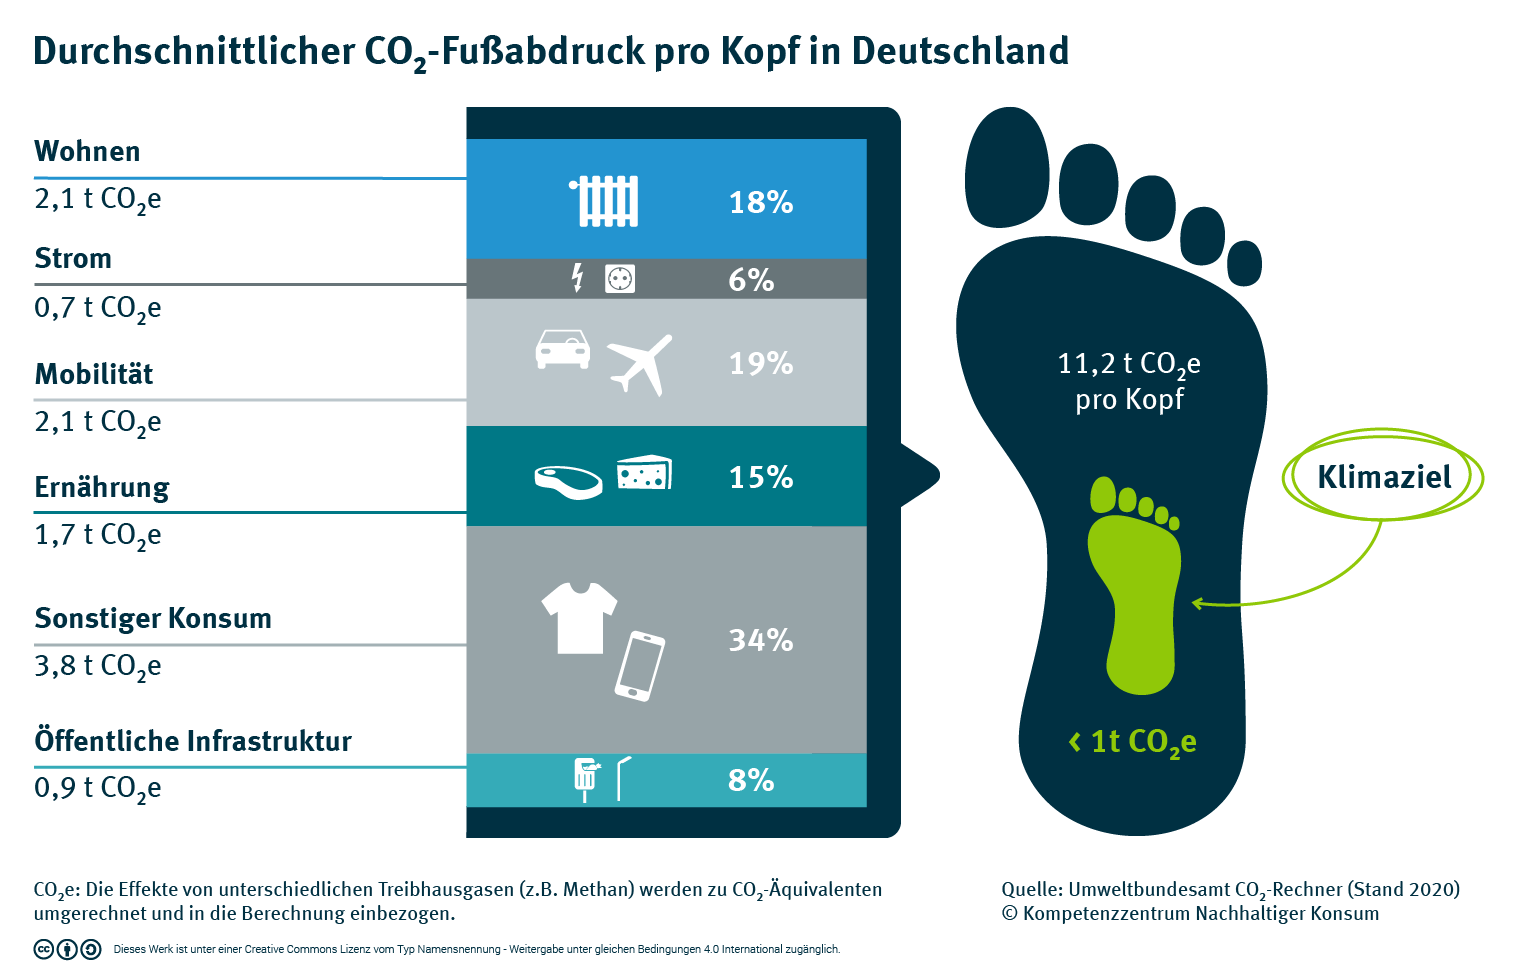 Durchschnittlicher CO2-Fußabdruck pro Kopf in Deutschland